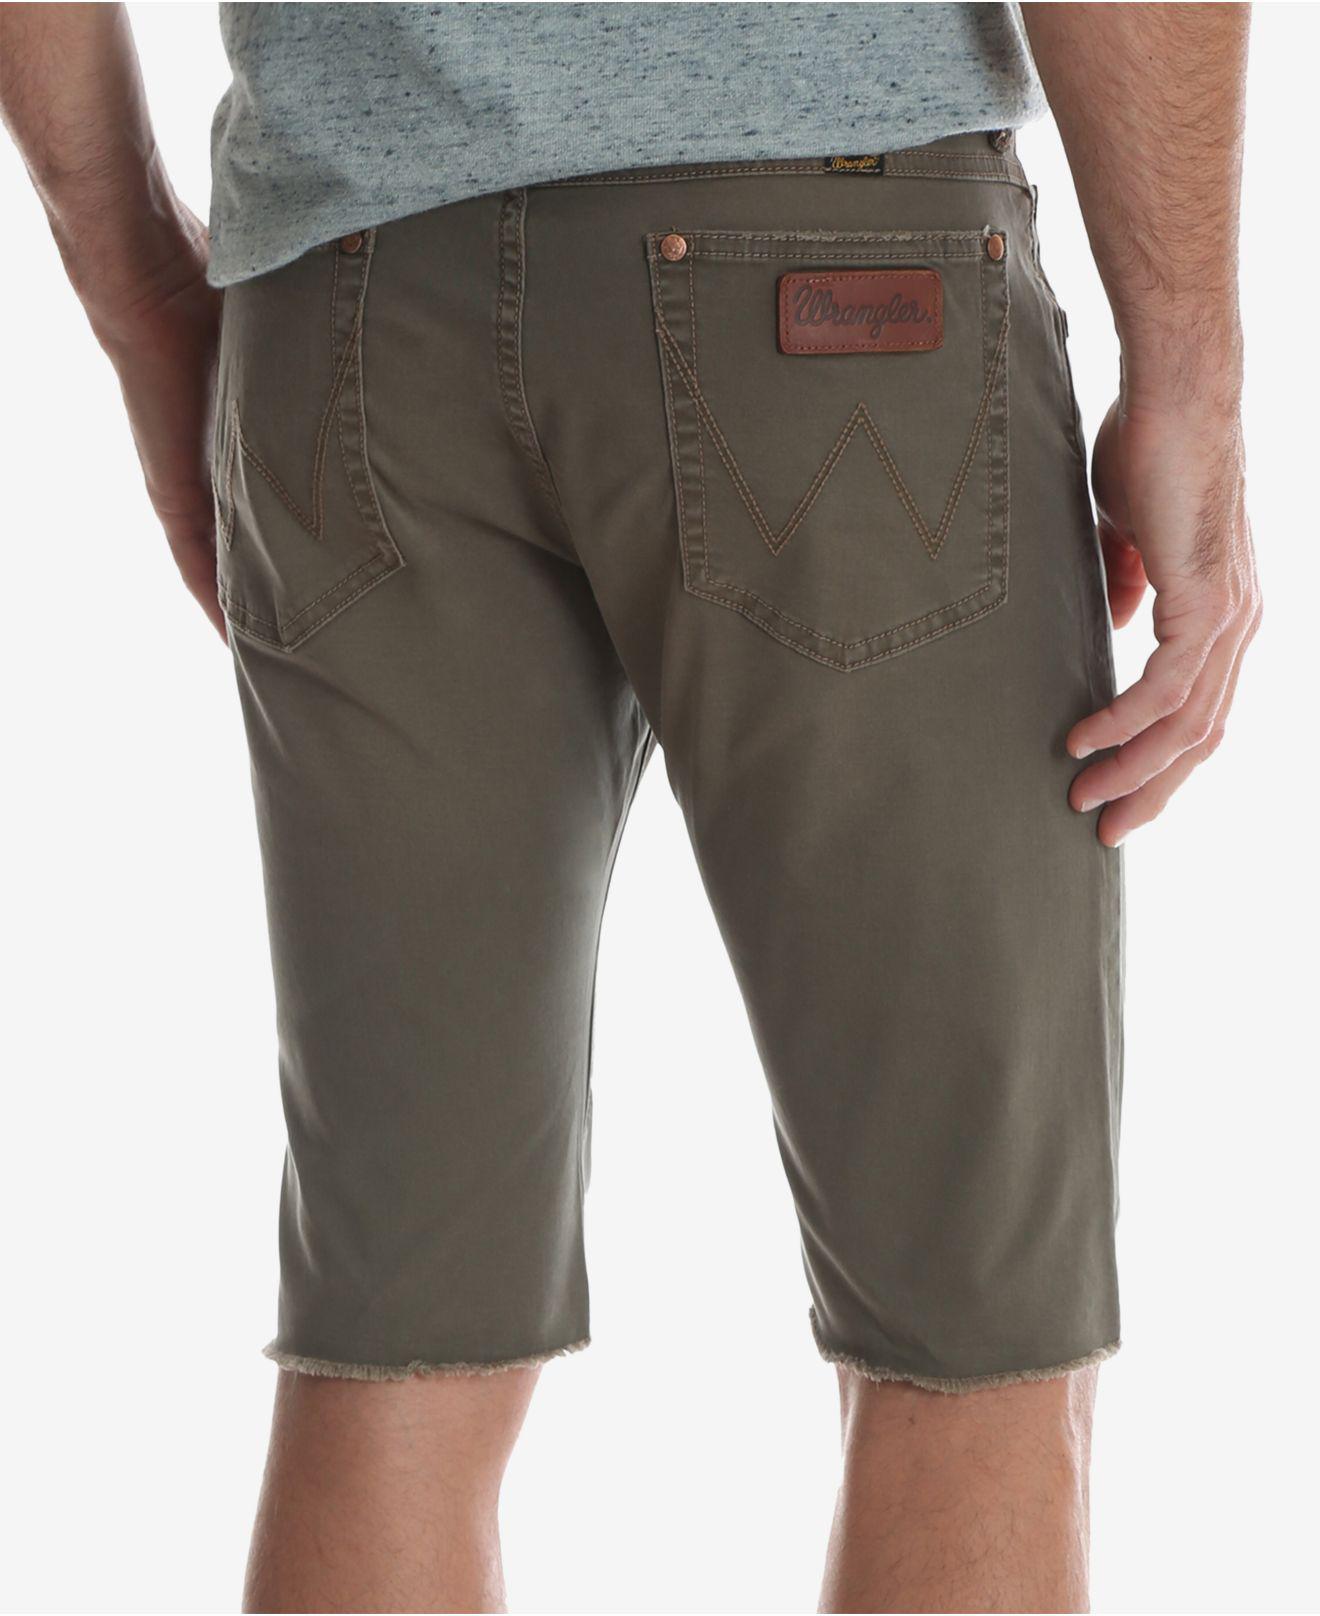 Buy > wrangler slim fit shorts > in stock